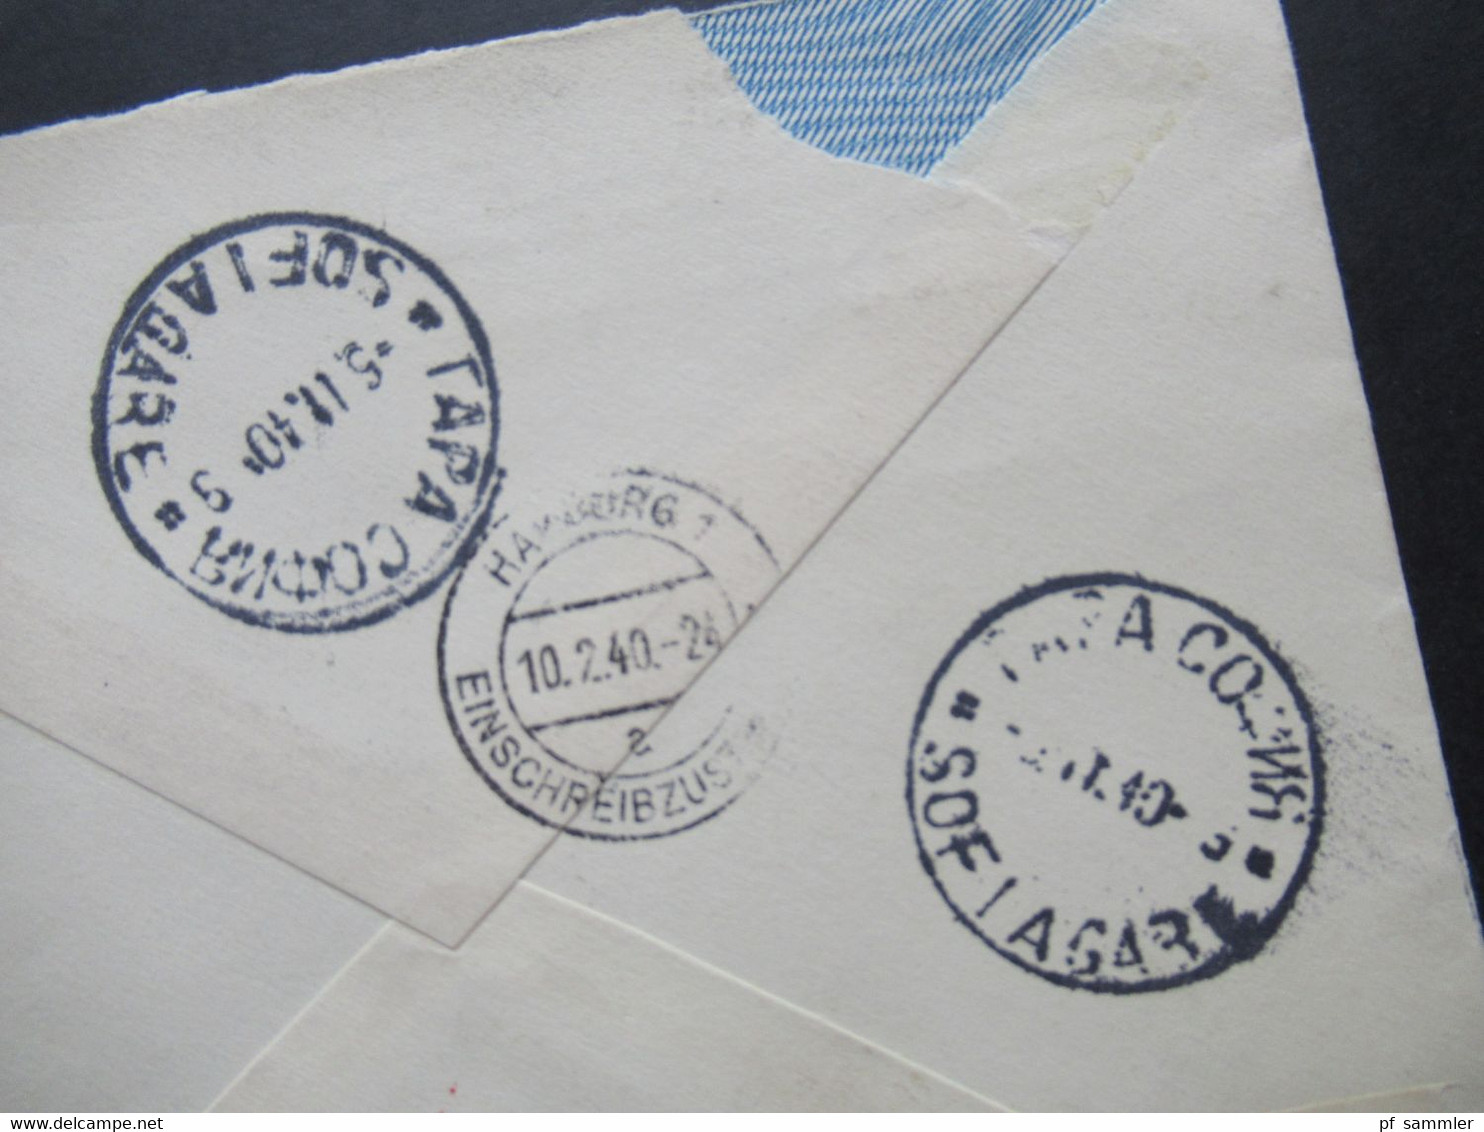 Bulgarien 1940 Luftpost Einschreiben  OKW Zensur /Mehrfachzensur / Zensurstereifen Geöffnet Stp. HH Einschreibzustellung - Covers & Documents